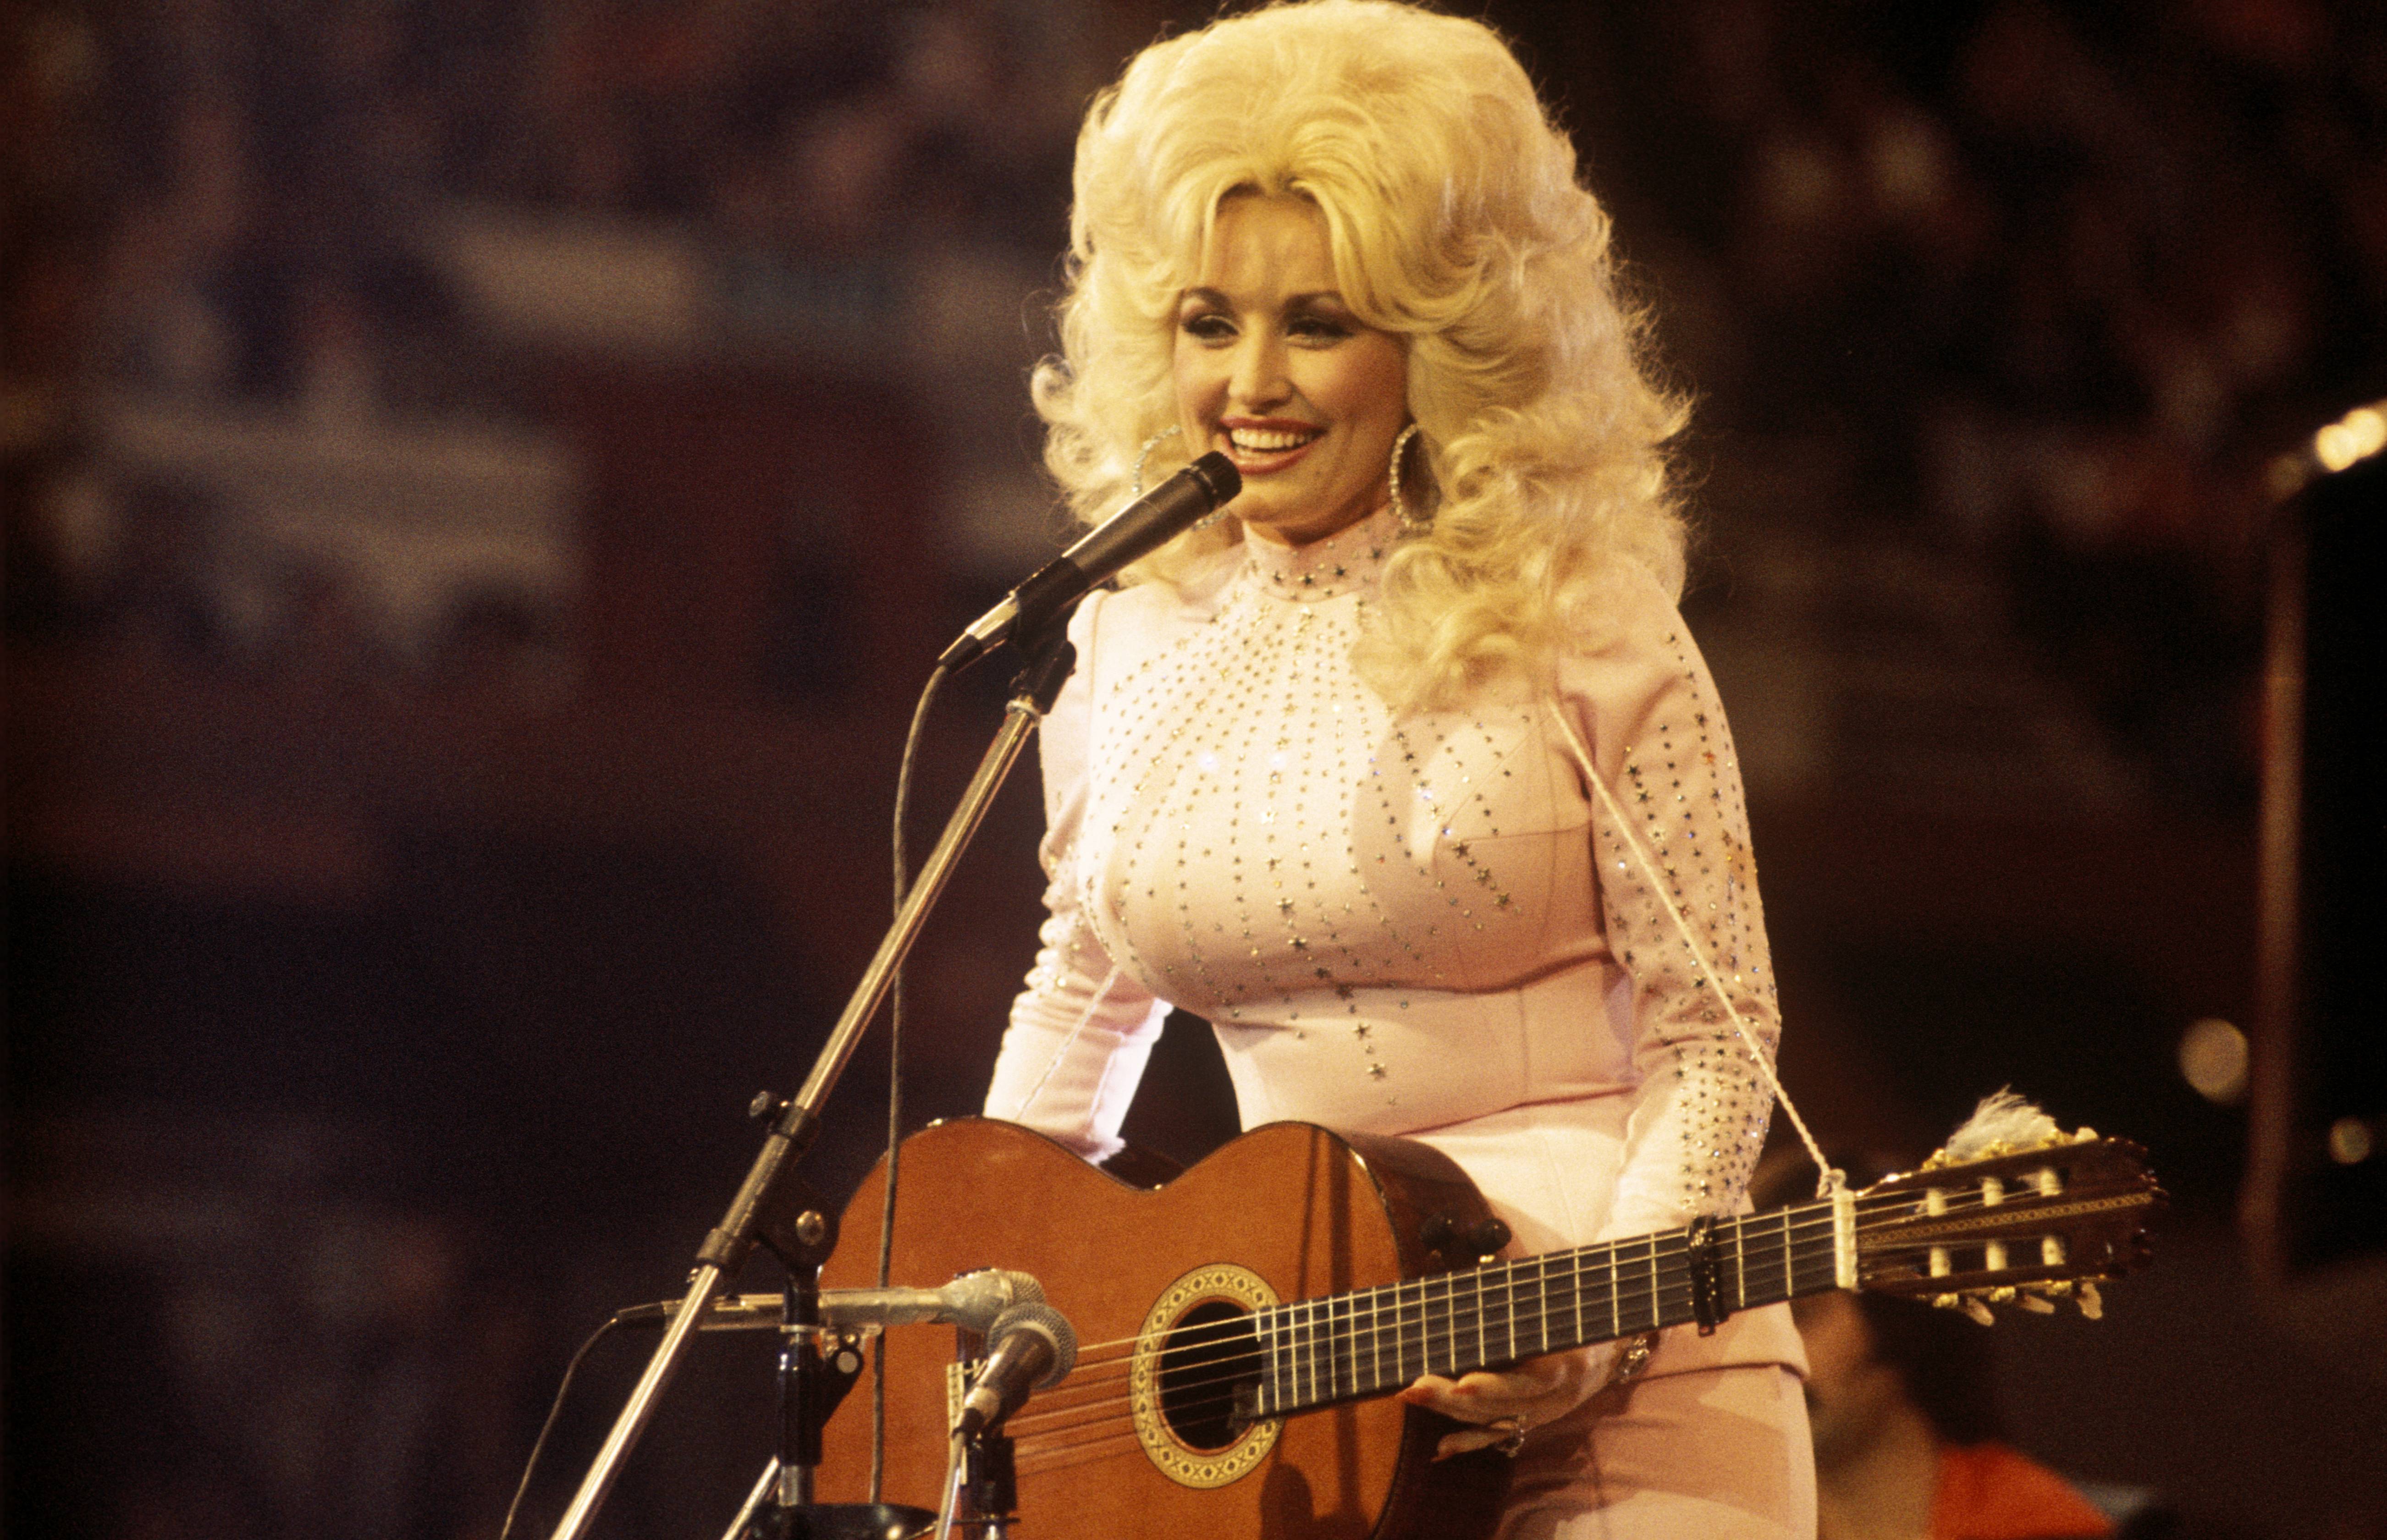 Dolly Parton ajudou sua avó 'inválida' quando nenhum dos outros netos o faria - ela também pregaria uma peça nela